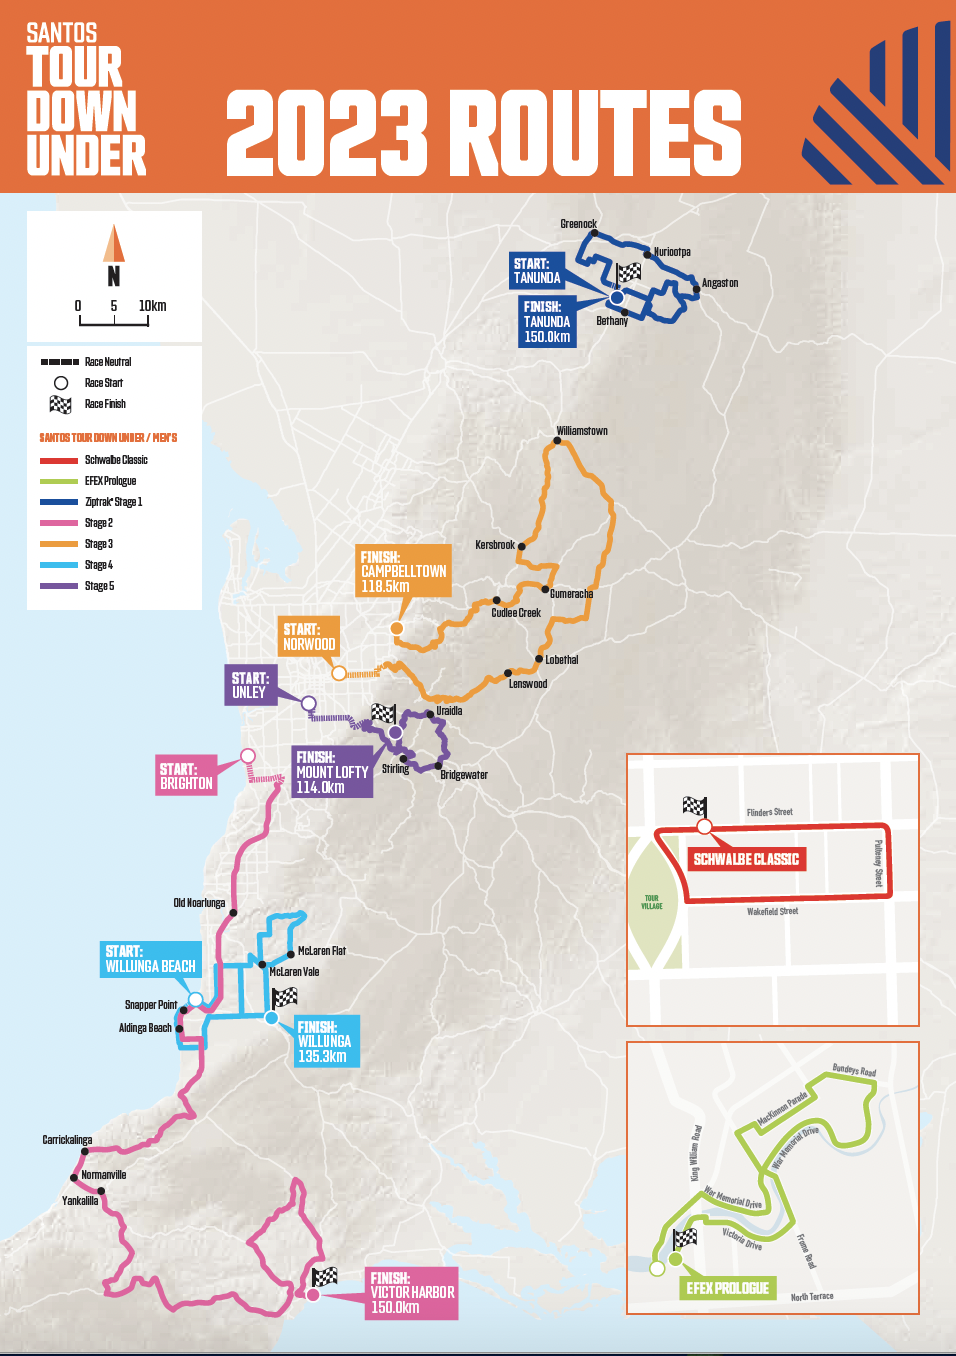 Tour Down Under 2023 Route 